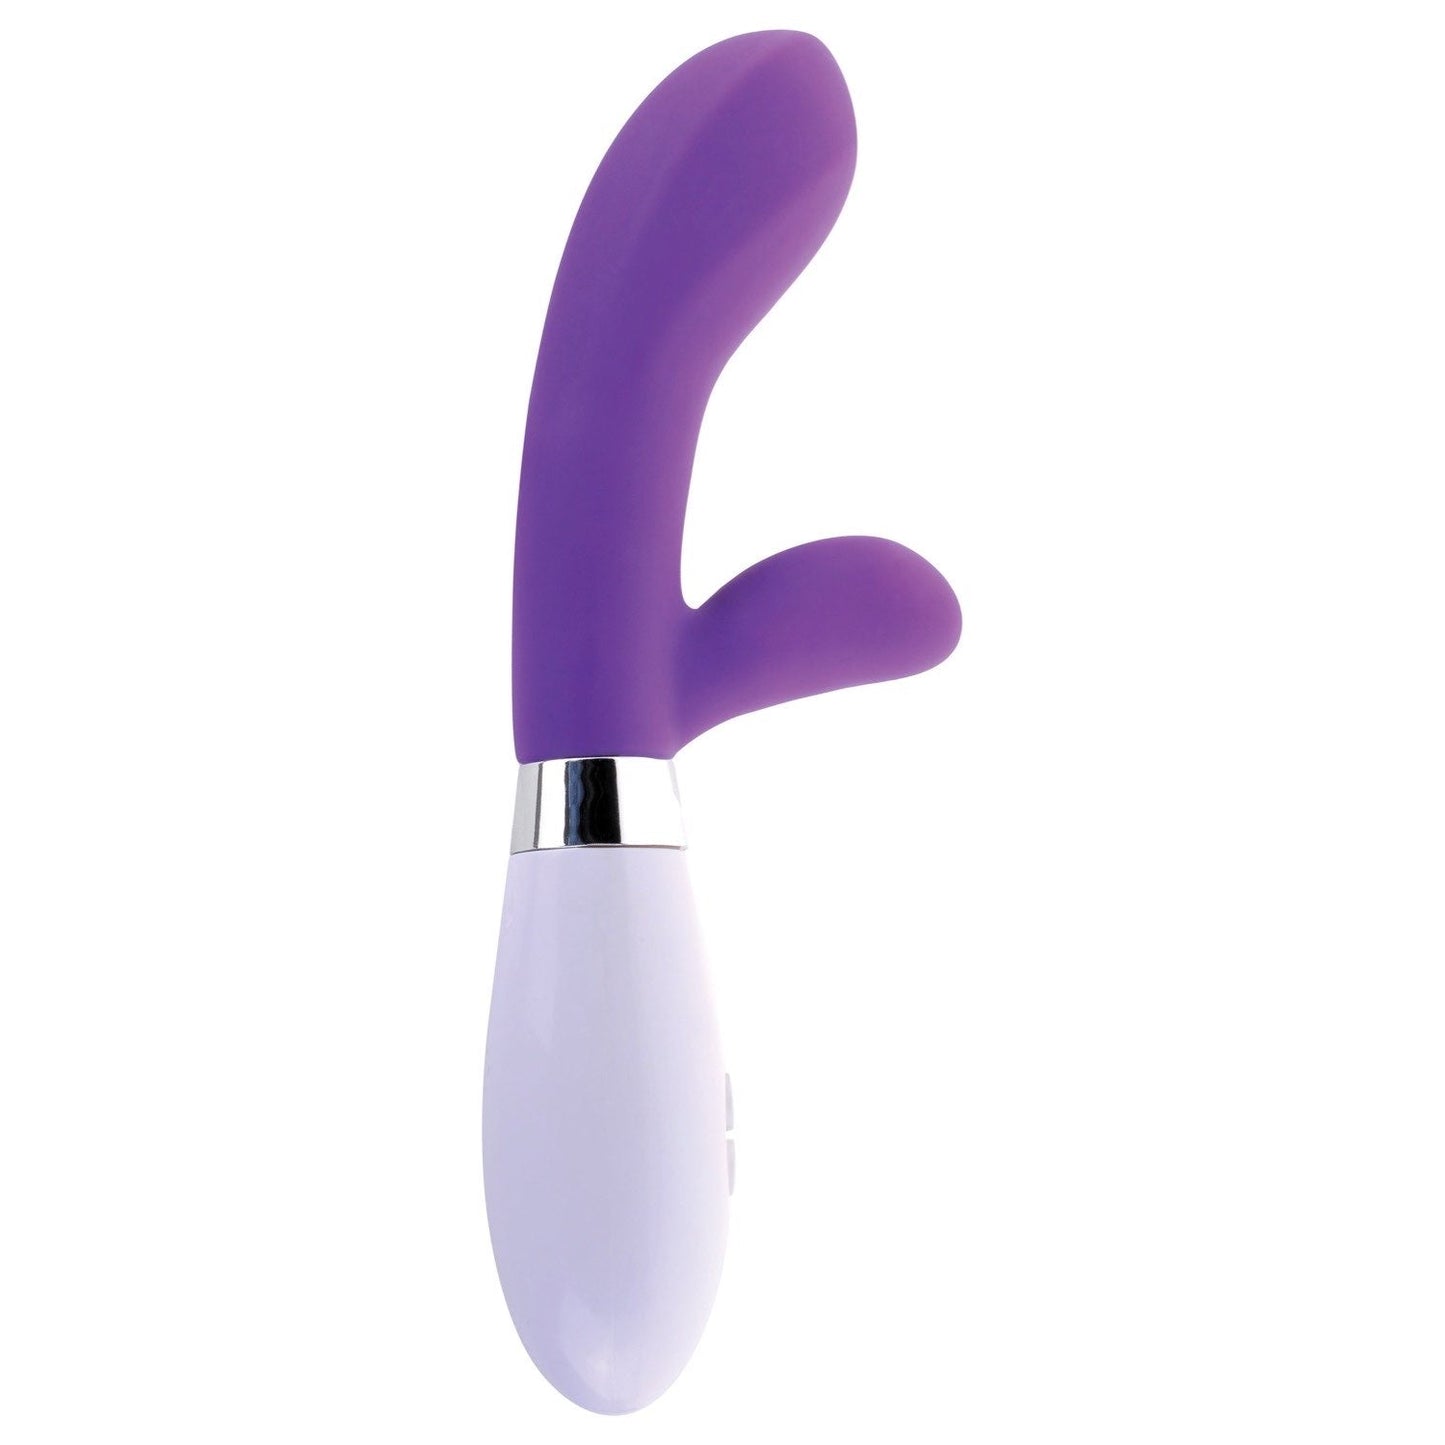 硅胶 G 点兔子 - 紫色 20.3 厘米（8 英寸）兔子振动器